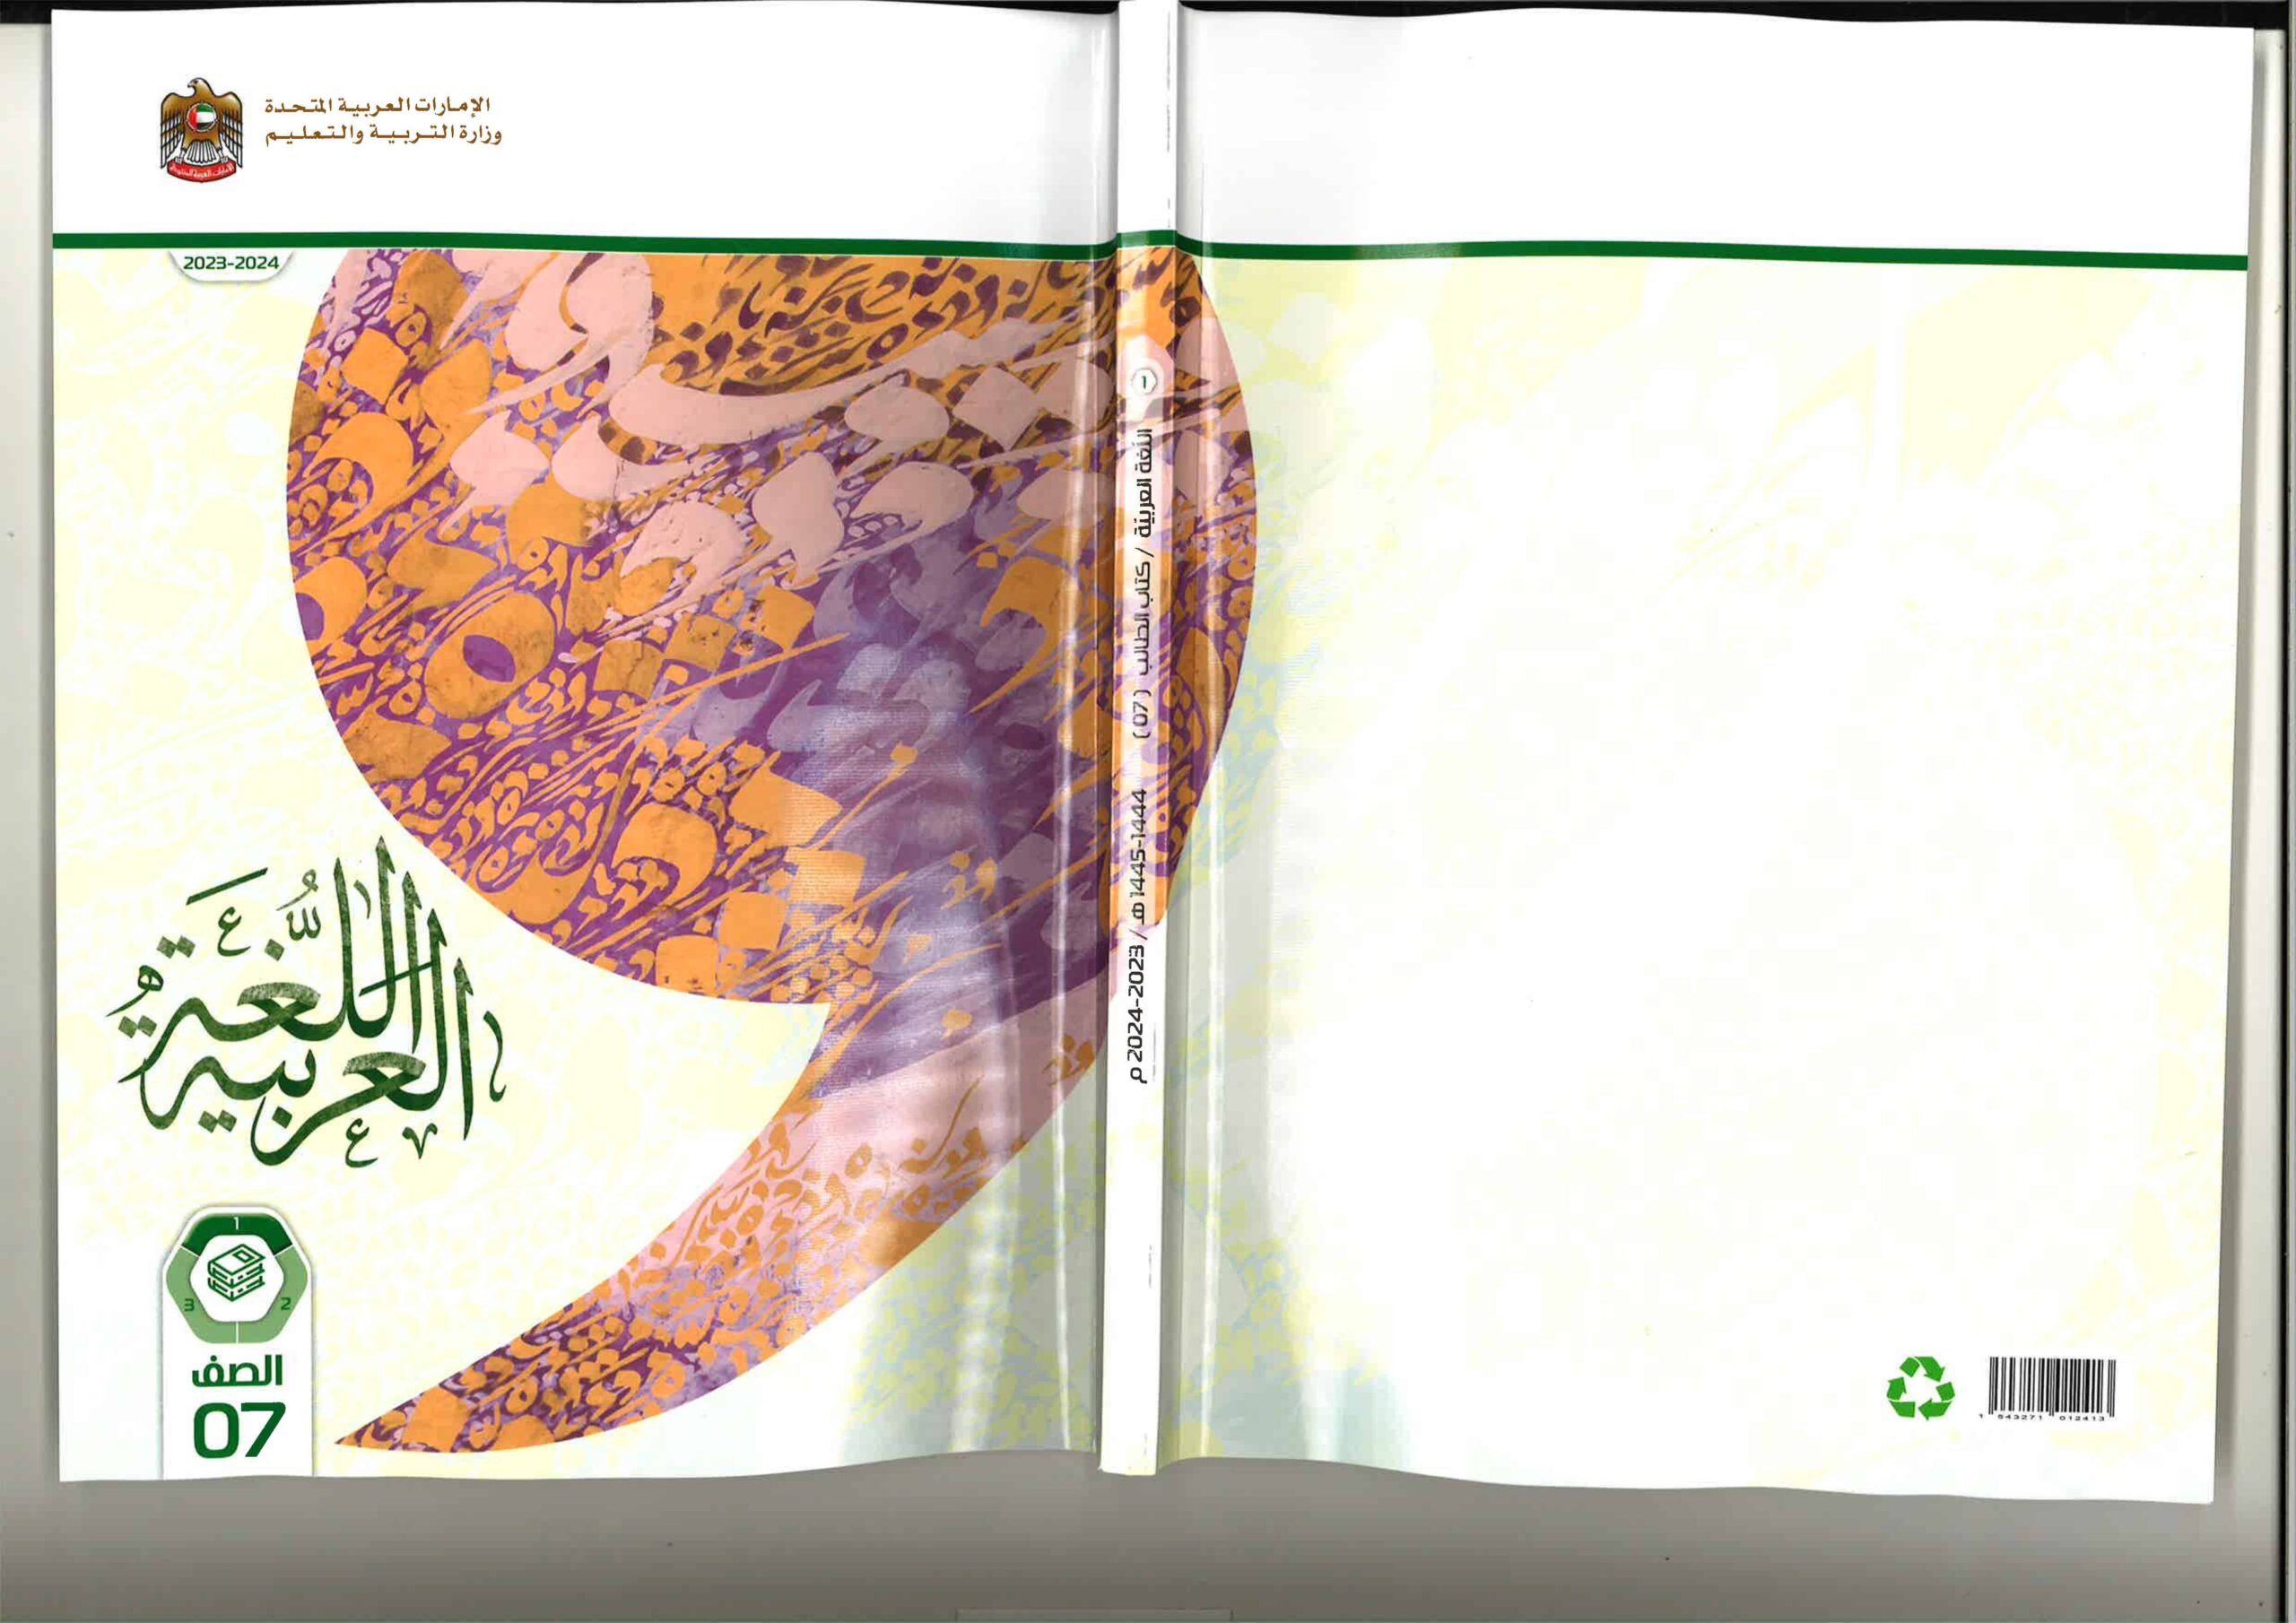 كتاب الطالب اللغة العربية الصف السابع الفصل الدراسي الأول 2023-2024 نسخة مصورة